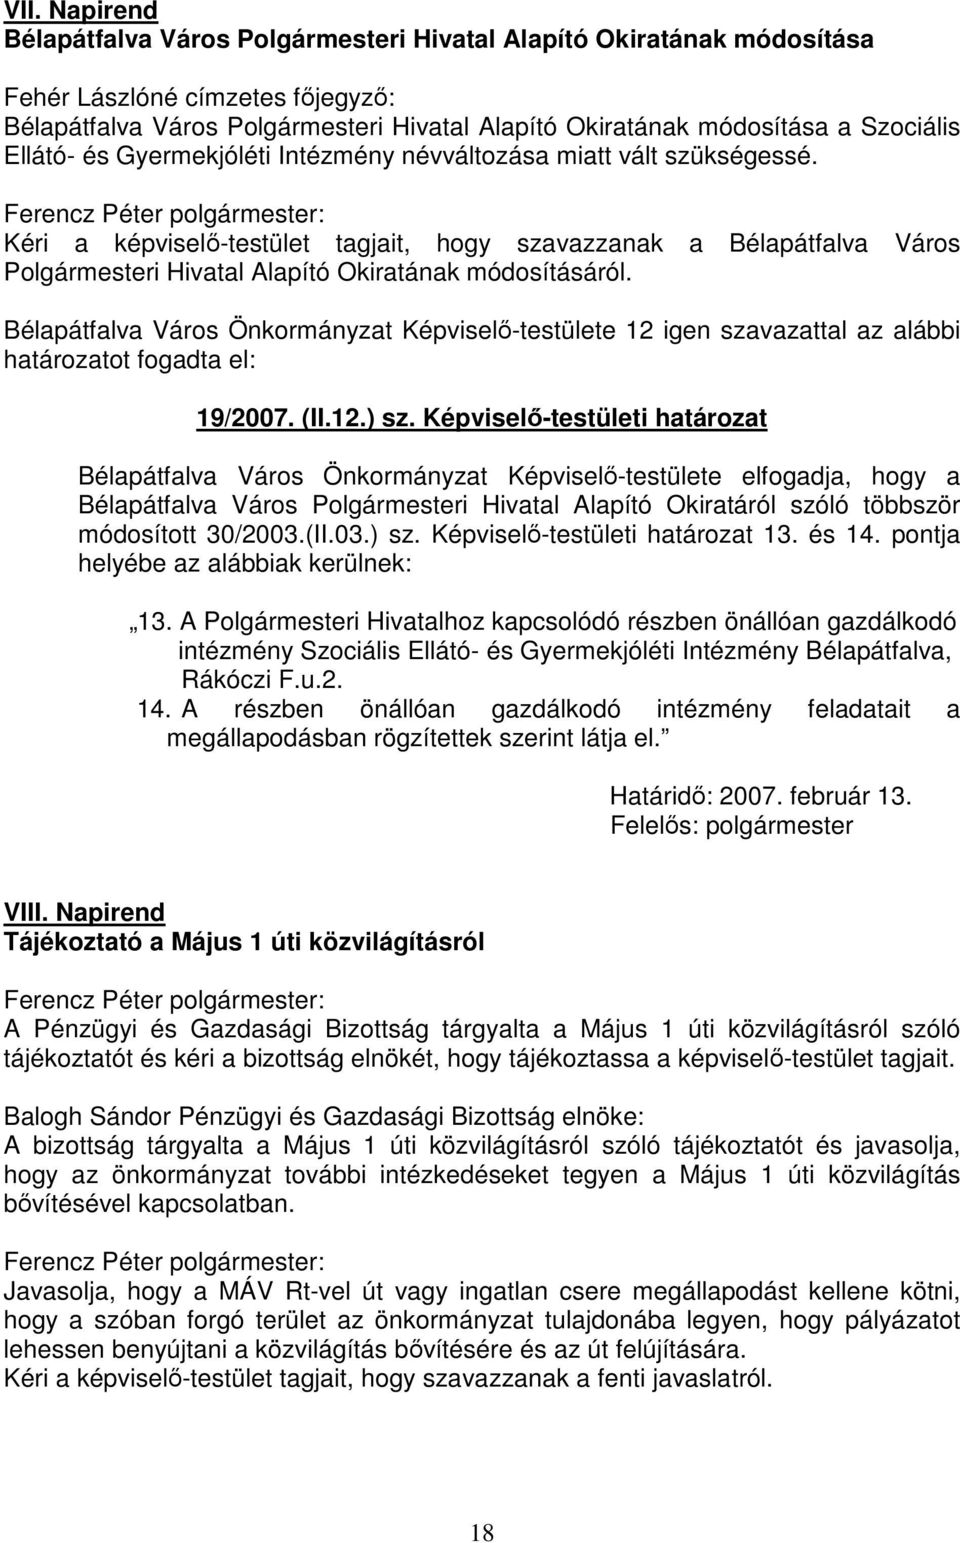 Kéri a képviselő-testület tagjait, hogy szavazzanak a Bélapátfalva Város Polgármesteri Hivatal Alapító Okiratának módosításáról.